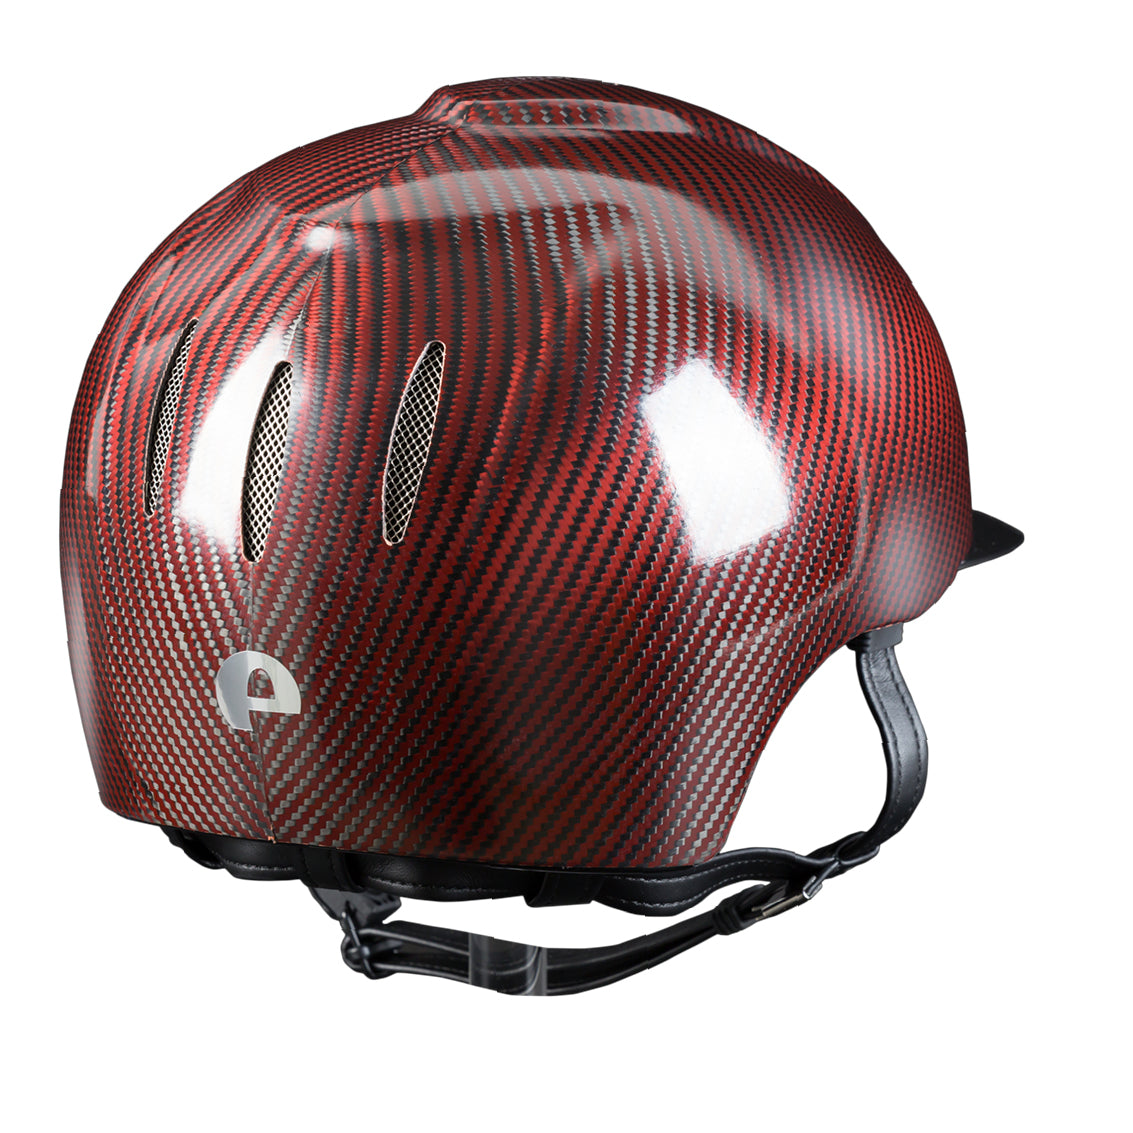 Casco in carbonio E-light Rosso e Nero lucido, visiera nero metallizzato e griglia in acciaio